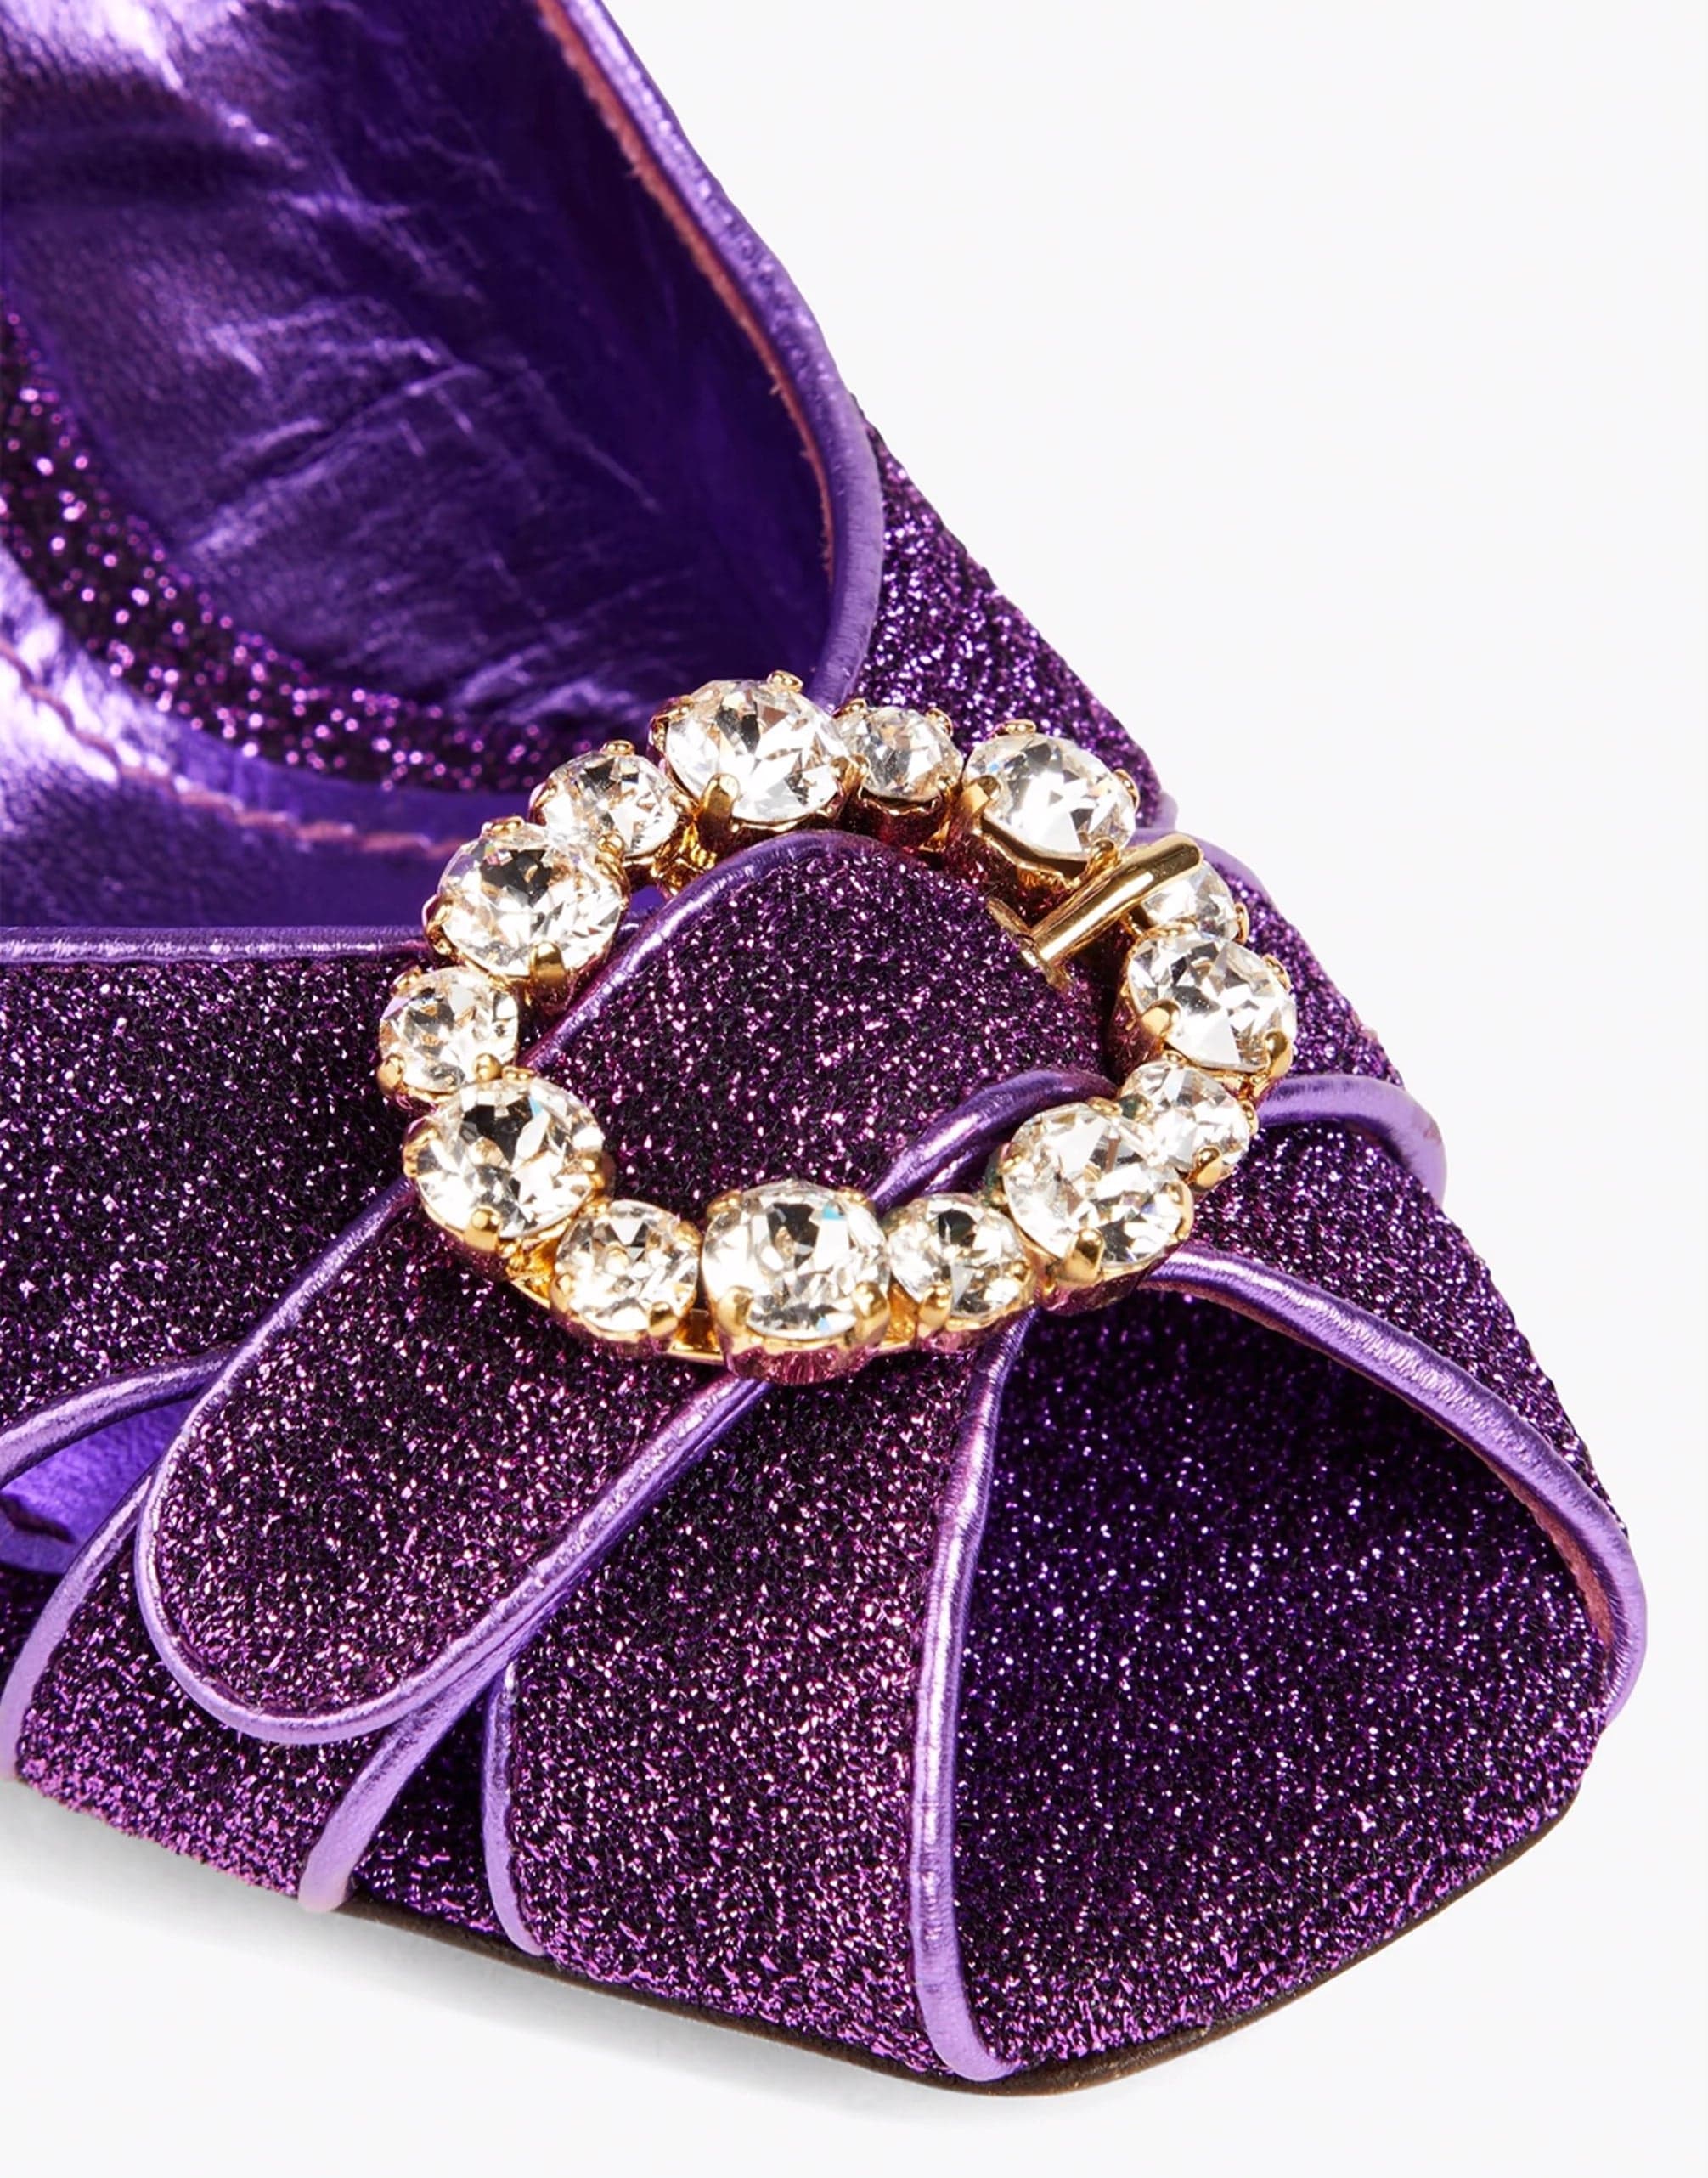 Dolce & Gabbana Embellished Lamé Sandals